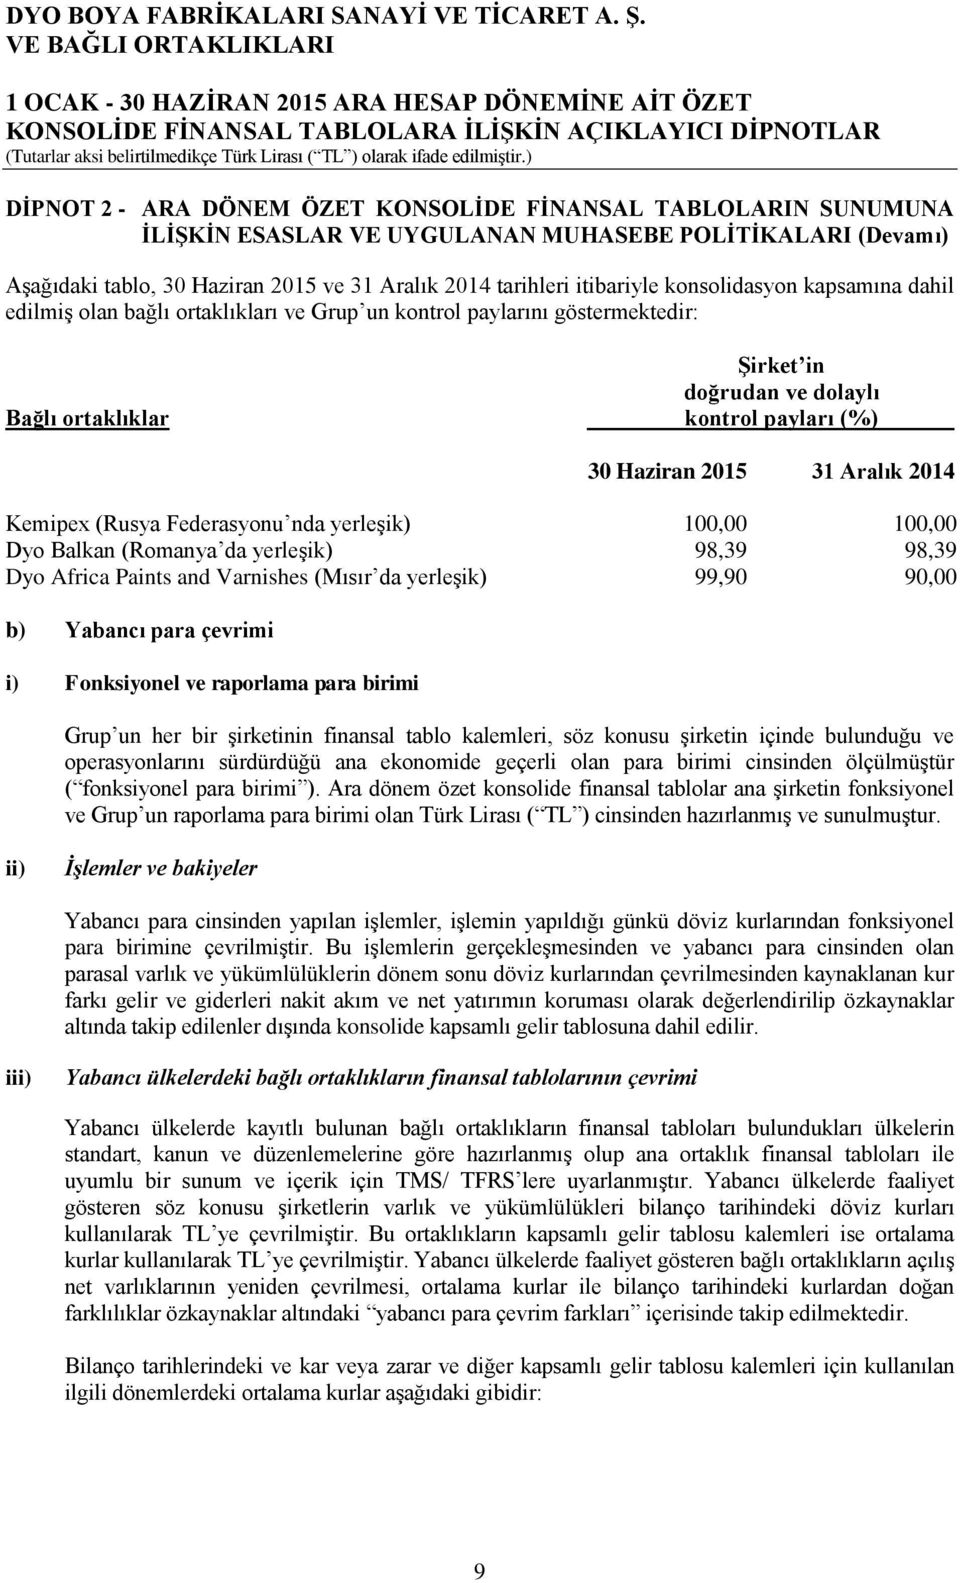 paylarını göstermektedir: Şirket in doğrudan ve dolaylı Bağlı ortaklıklar kontrol payları (%) 30 Haziran 2015 31 Aralık 2014 Kemipex (Rusya Federasyonu nda yerleşik) 100,00 100,00 Dyo Balkan (Romanya